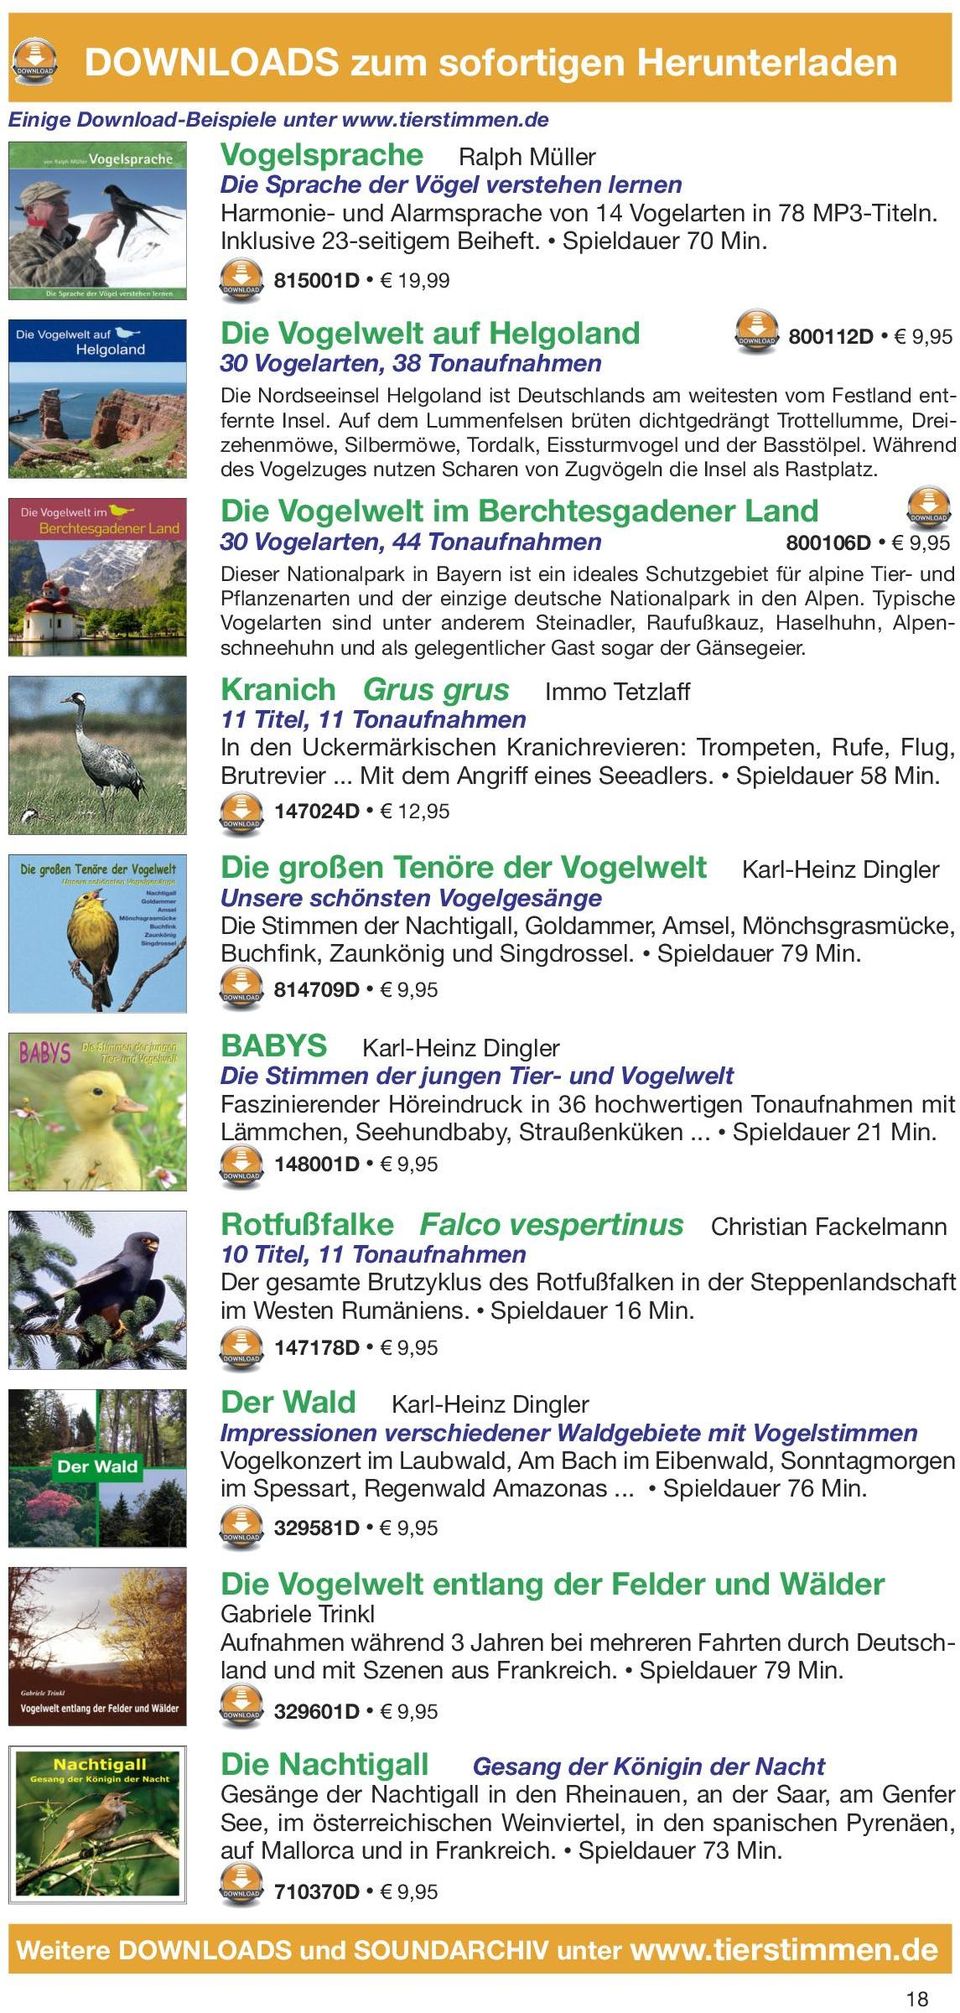 815001D 19,99 Die Vogelwelt auf Helgoland 800112D 9,95 30 Vogelarten, 38 Tonaufnahmen Die Nordseeinsel Helgoland ist Deutschlands am weitesten vom Festland entfernte Insel.